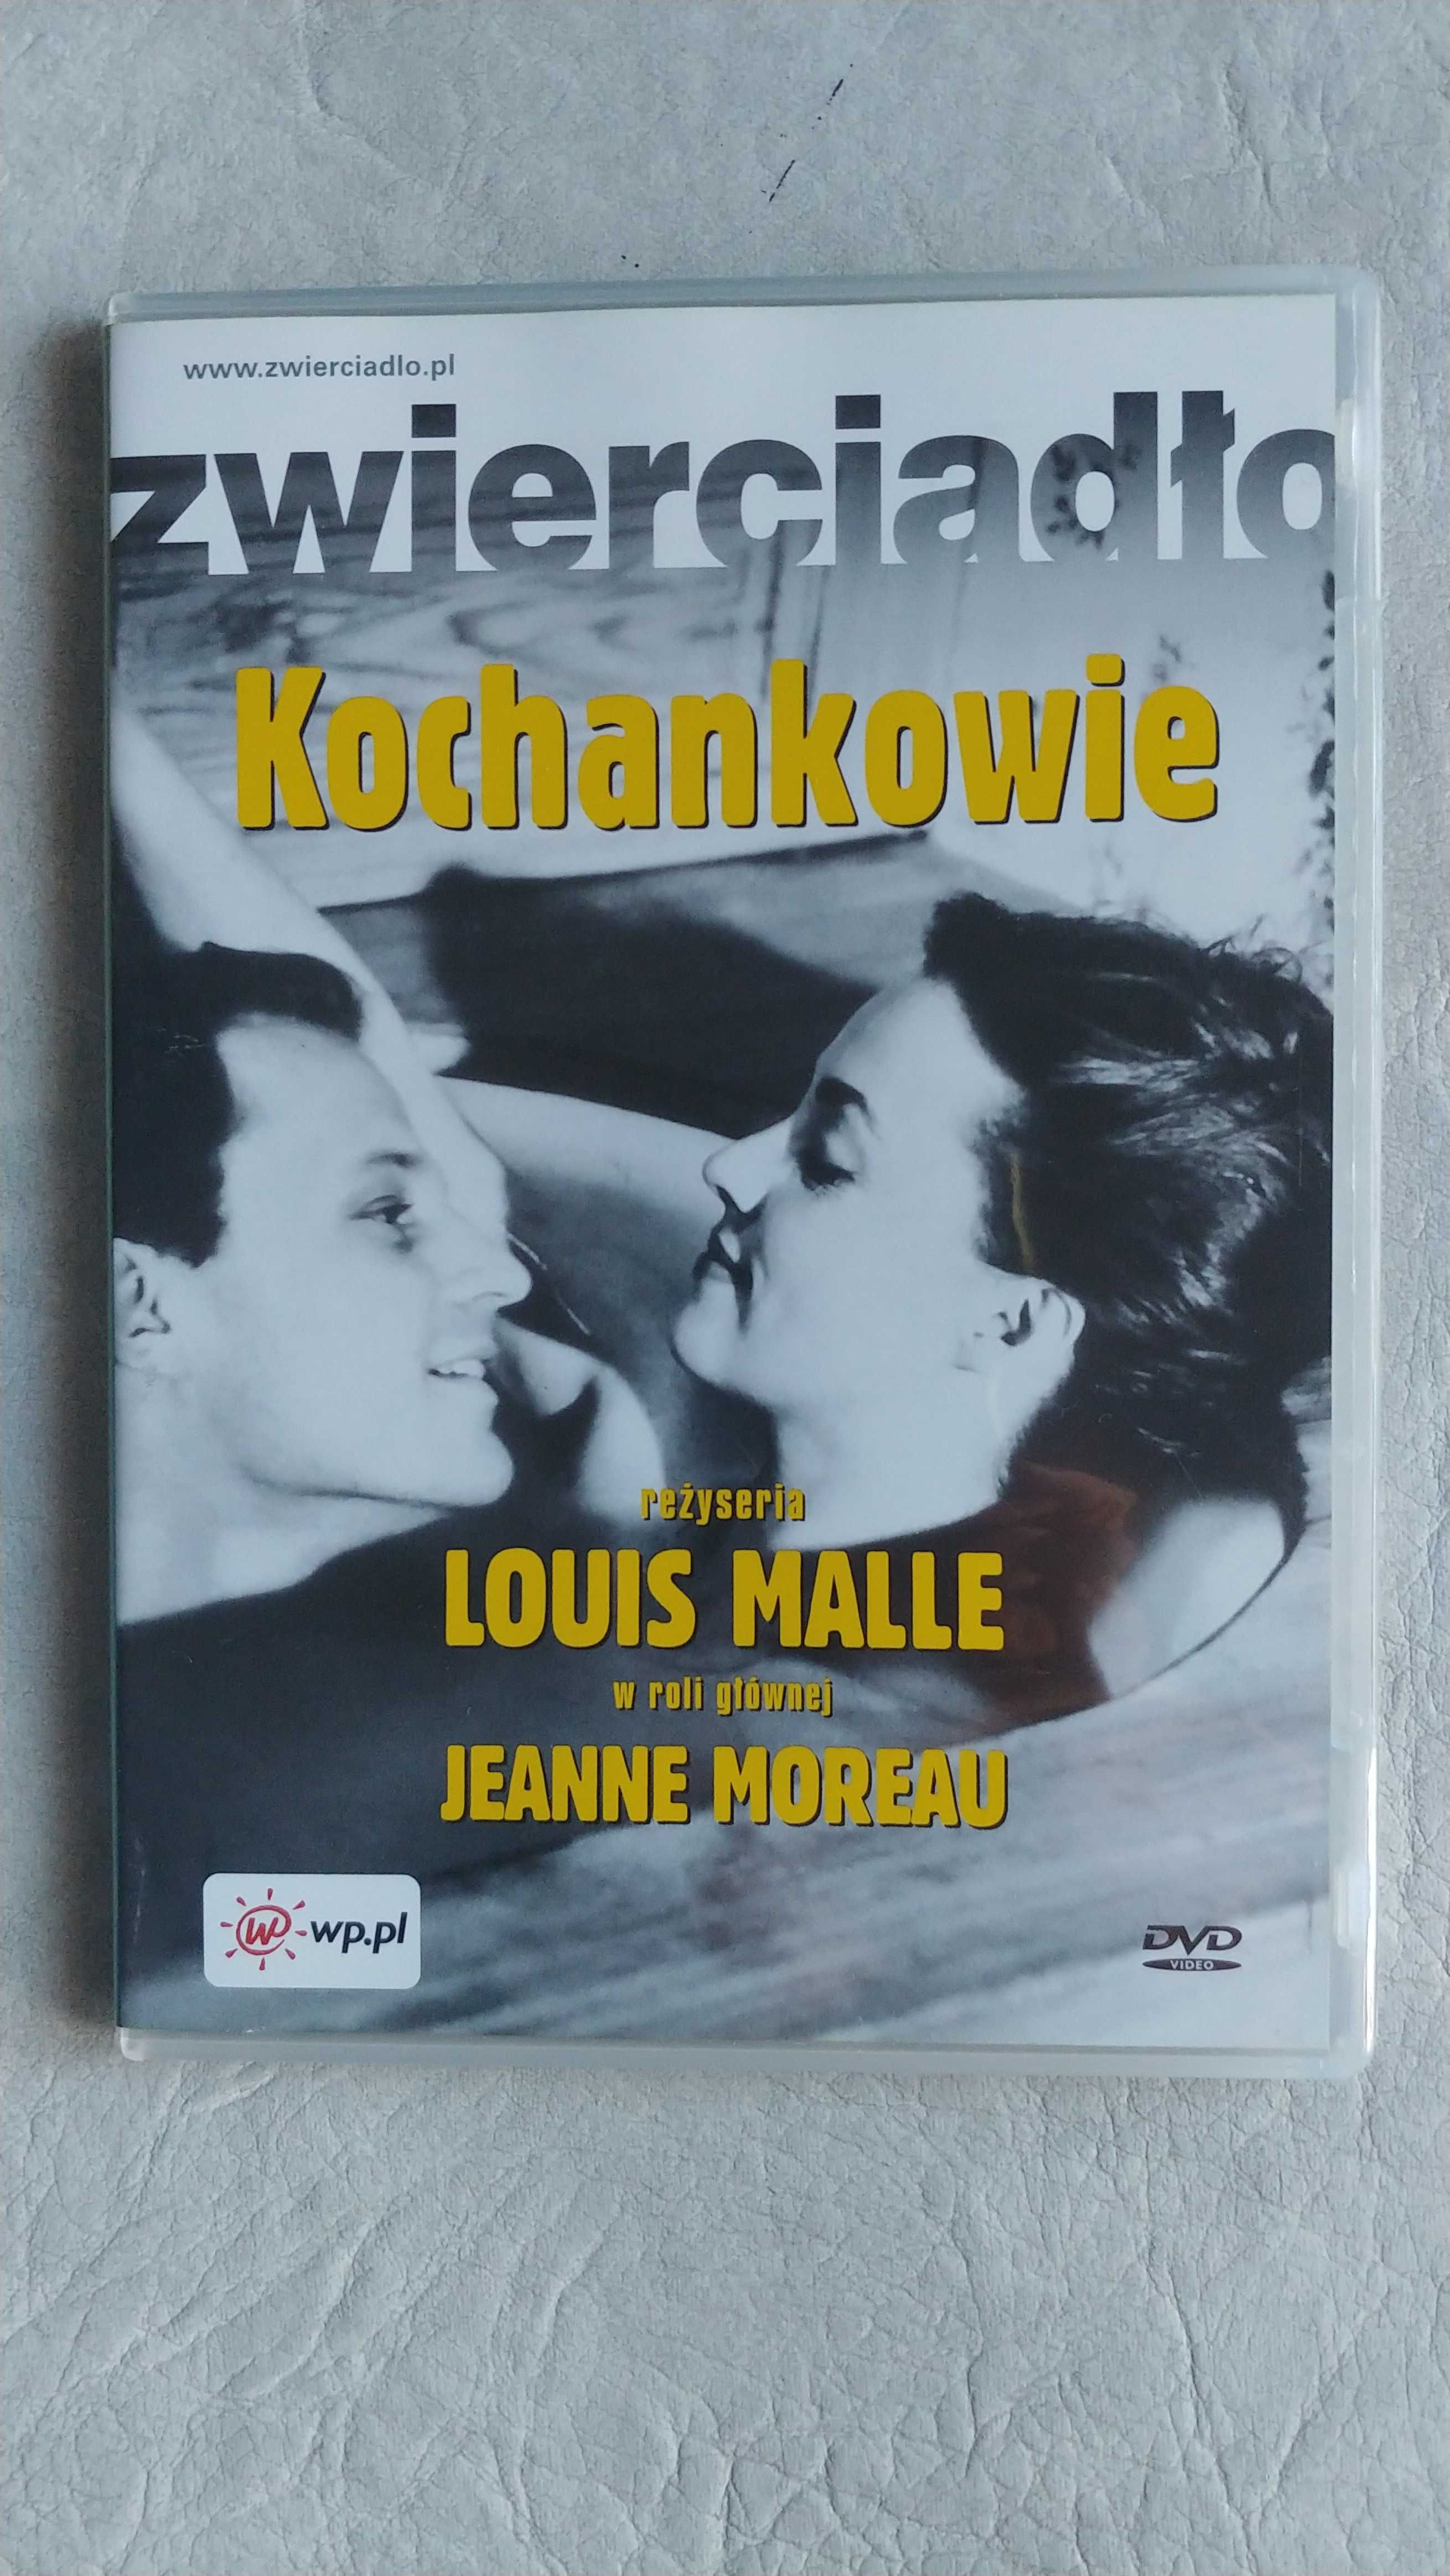 DVD – Kochankowie – z Jeanie Moreau w roli głównej